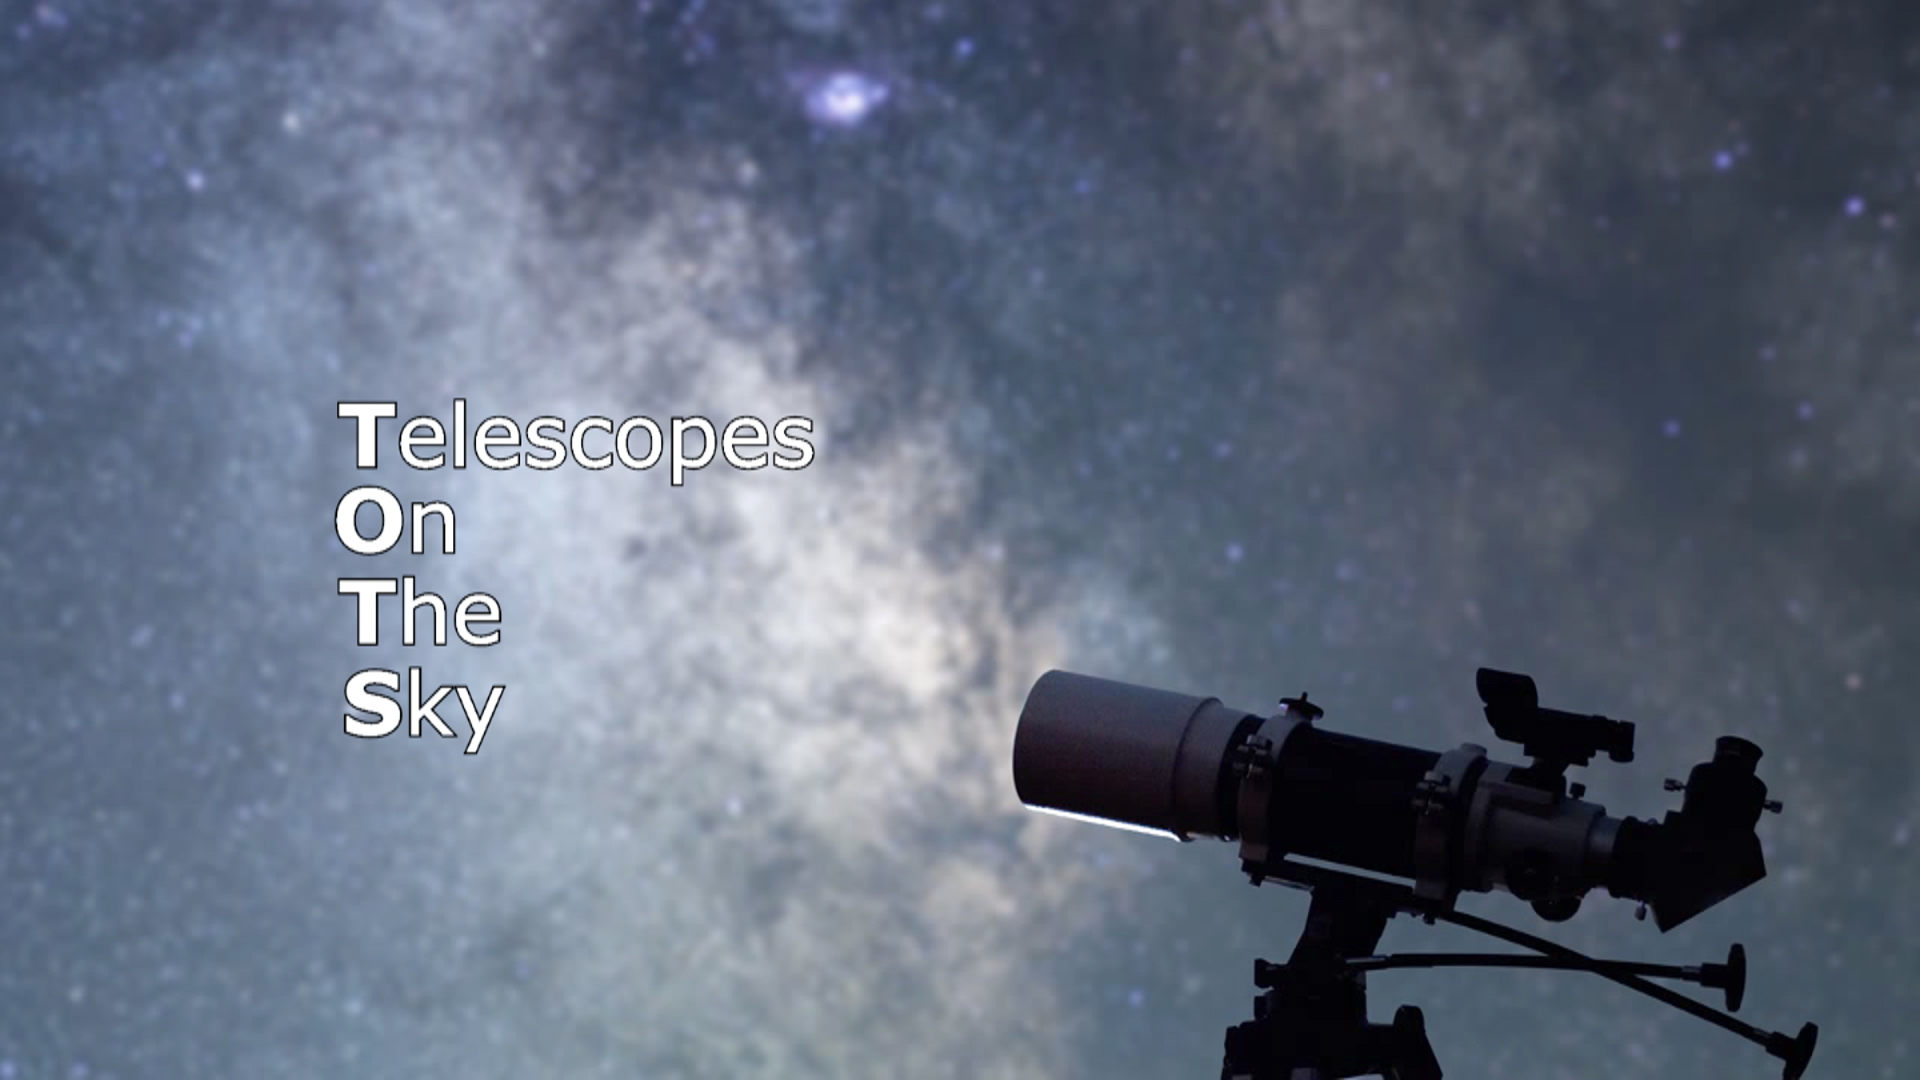 sky and telescope reviews